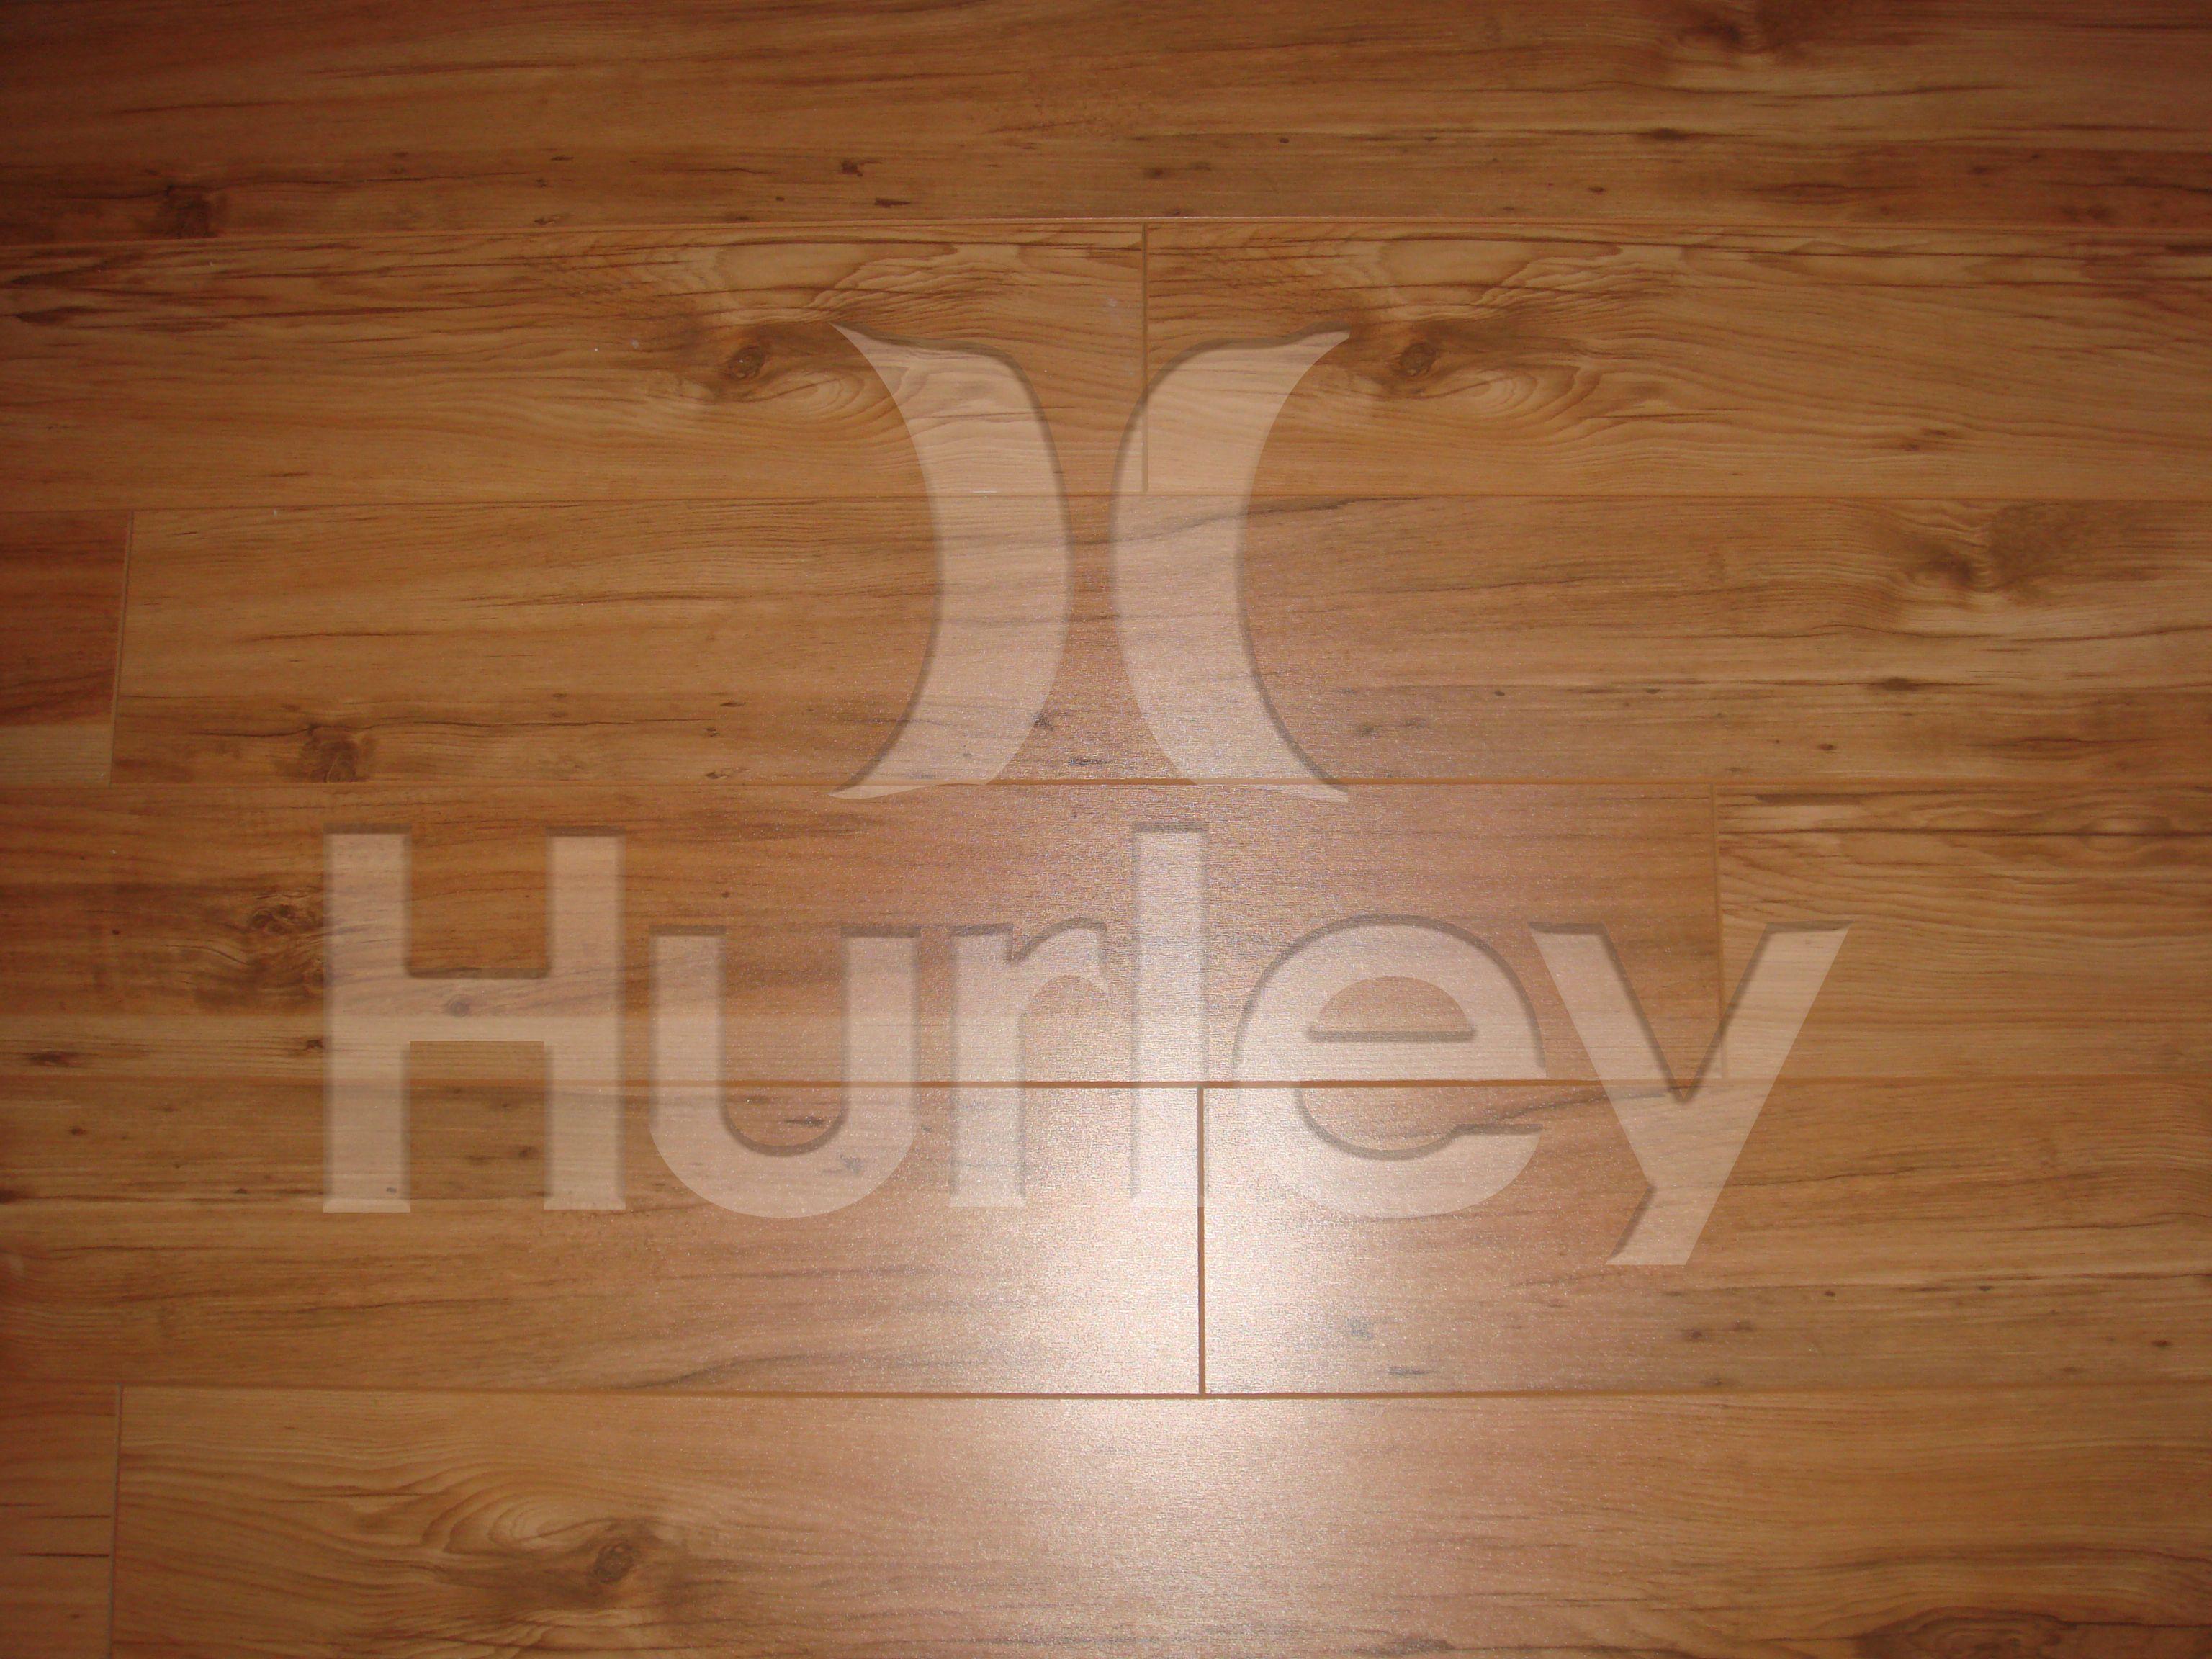 hurley logo wallpaper Hurley: The Social